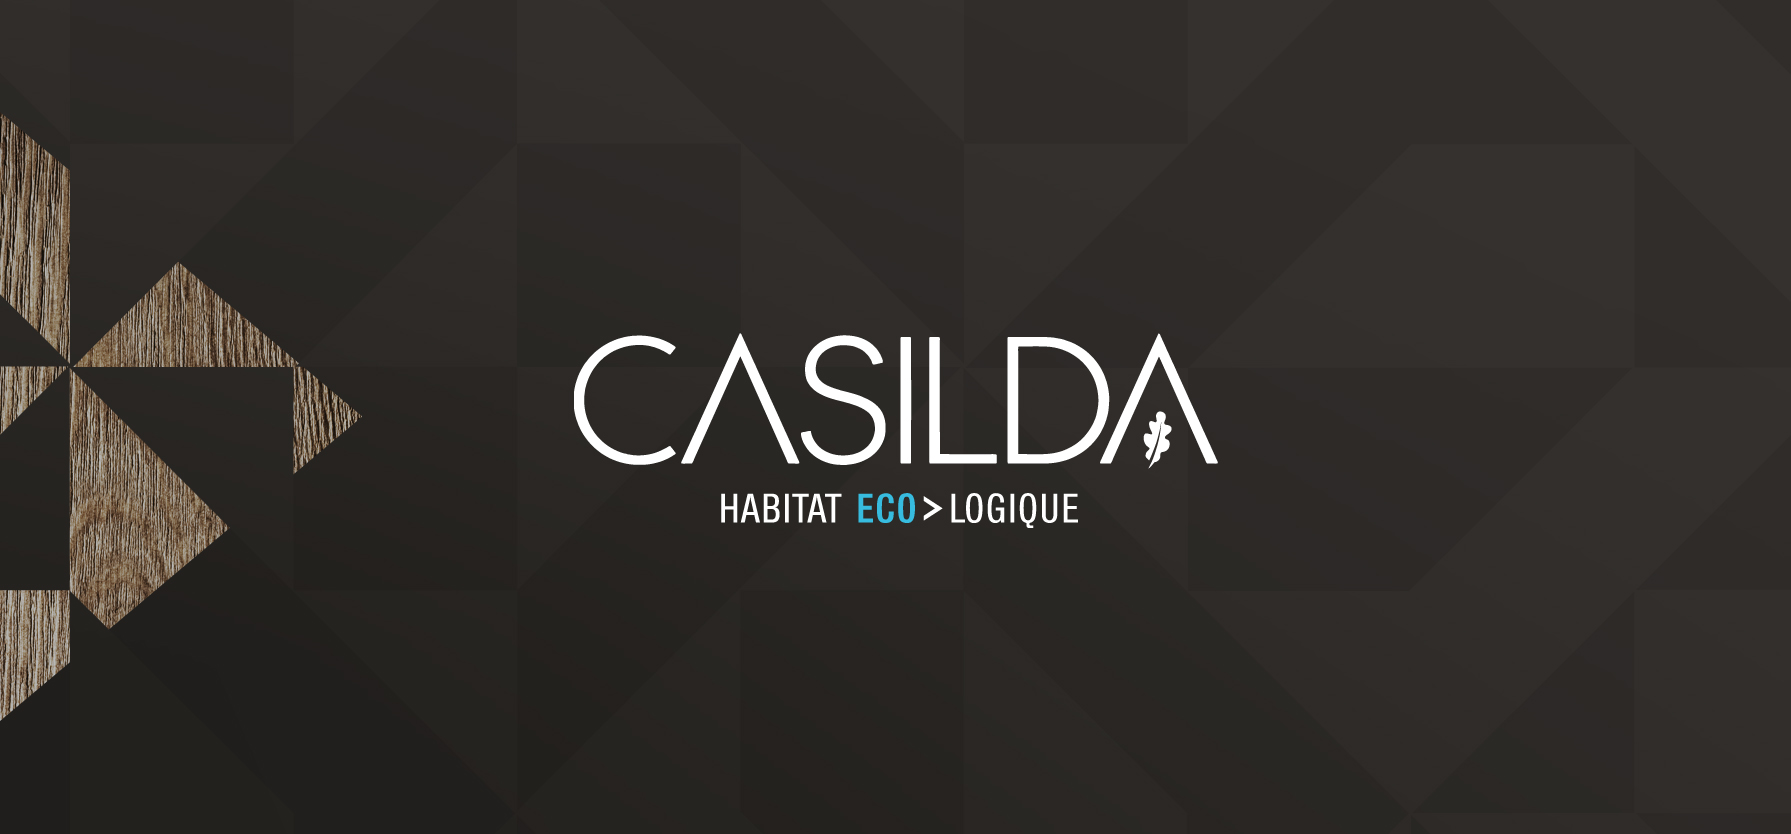 casilda_identite_graphique-01